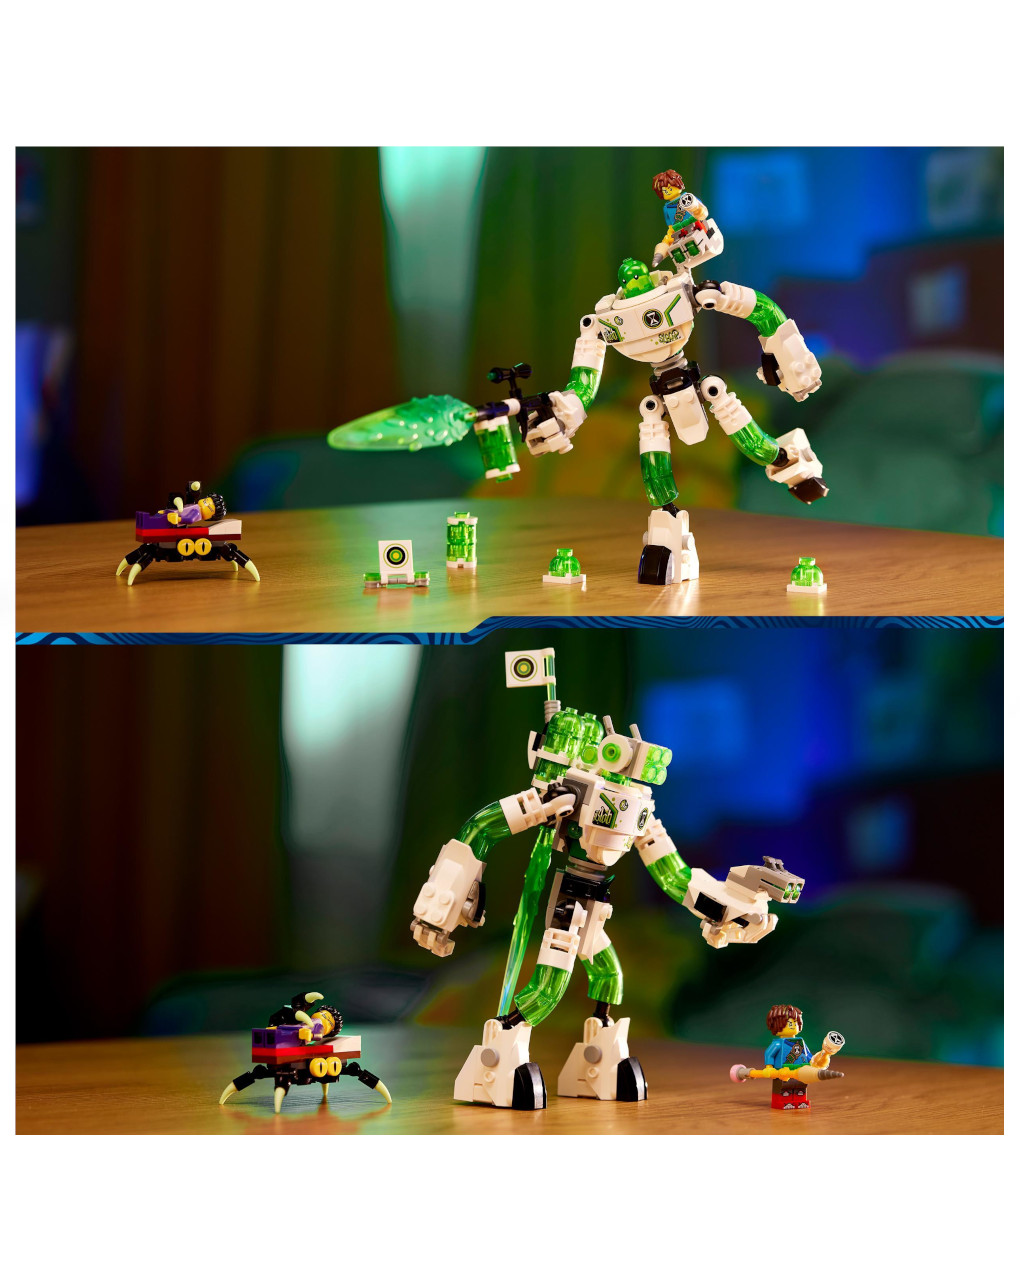 Mateo e o robot z-blob 71454 - lego dreamzzz - Lego Dreamzzz